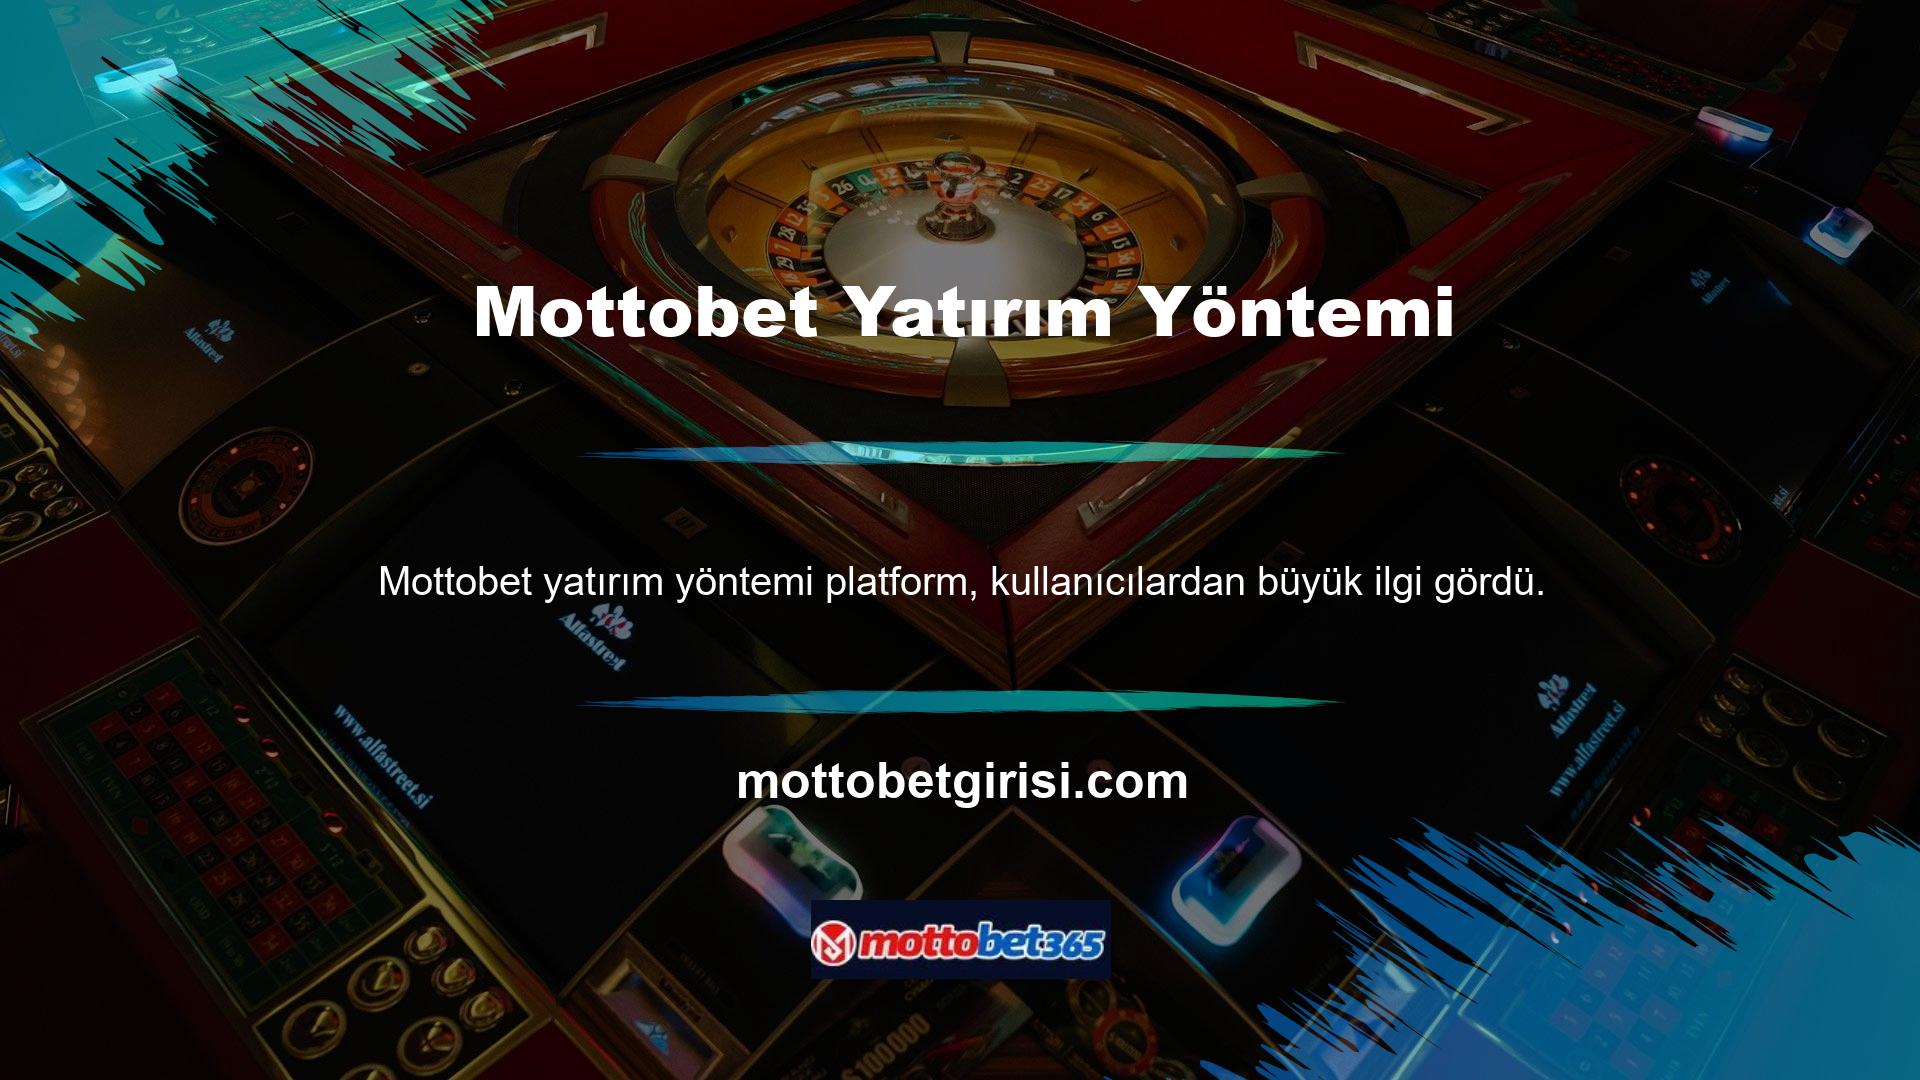 Oyunların Türk kullanıcılara özel olarak hazırlanmış olması ve tüm müşteri destek hizmetlerinin Türkçe olarak verilmesi ve platformun tamamen Türkçe olması oyunun mikro hizmetlerini bu konuda mükemmelleştirmiştir